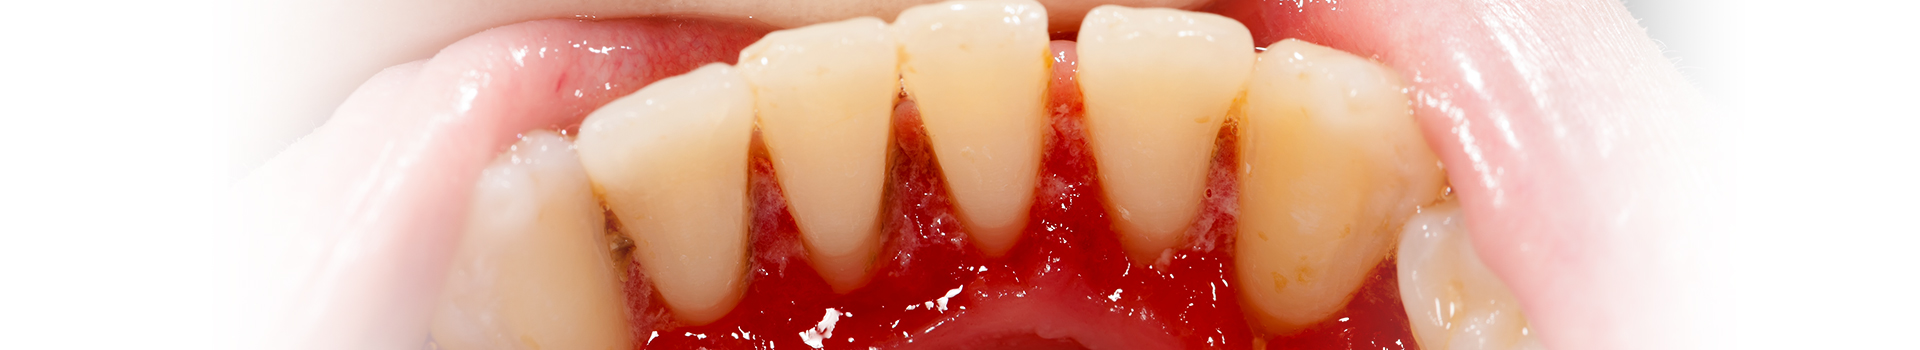 Gum Disease Treatments in Kirkland, WA